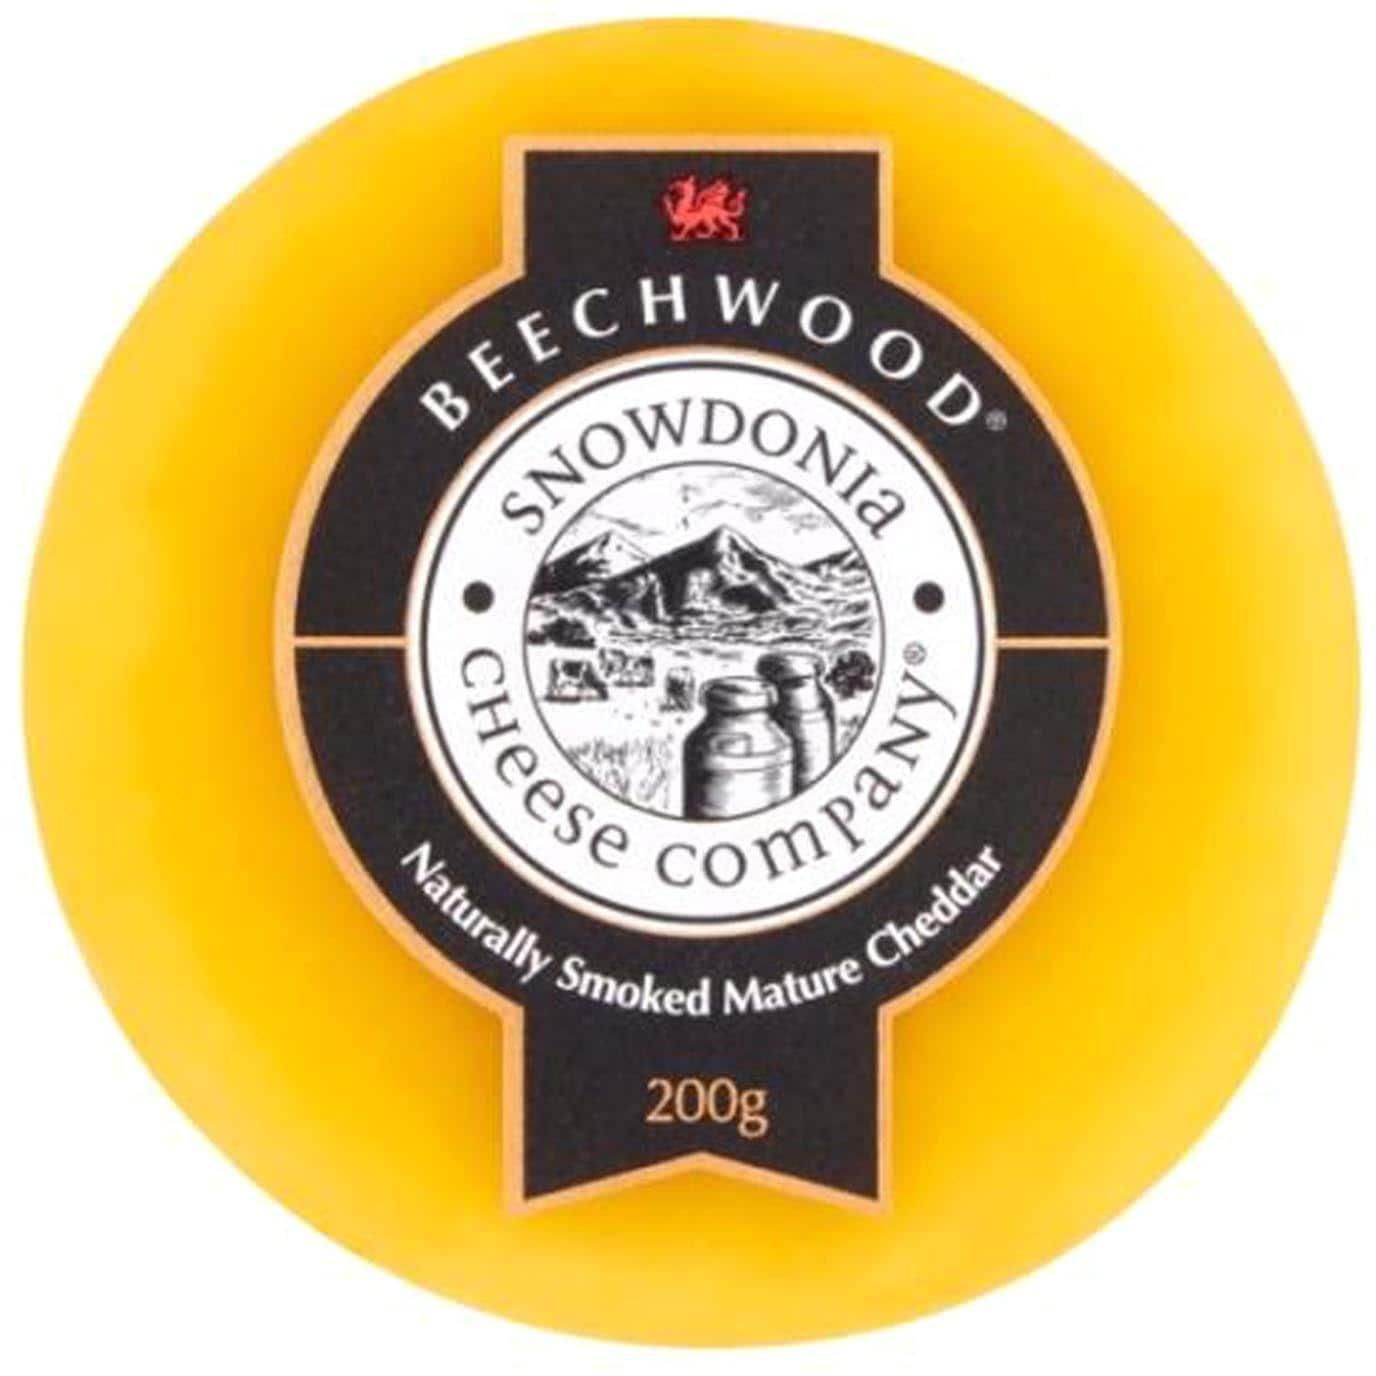 Snowdonia Beechwood Naturally Smoked Mature Chedder Cheese 200g